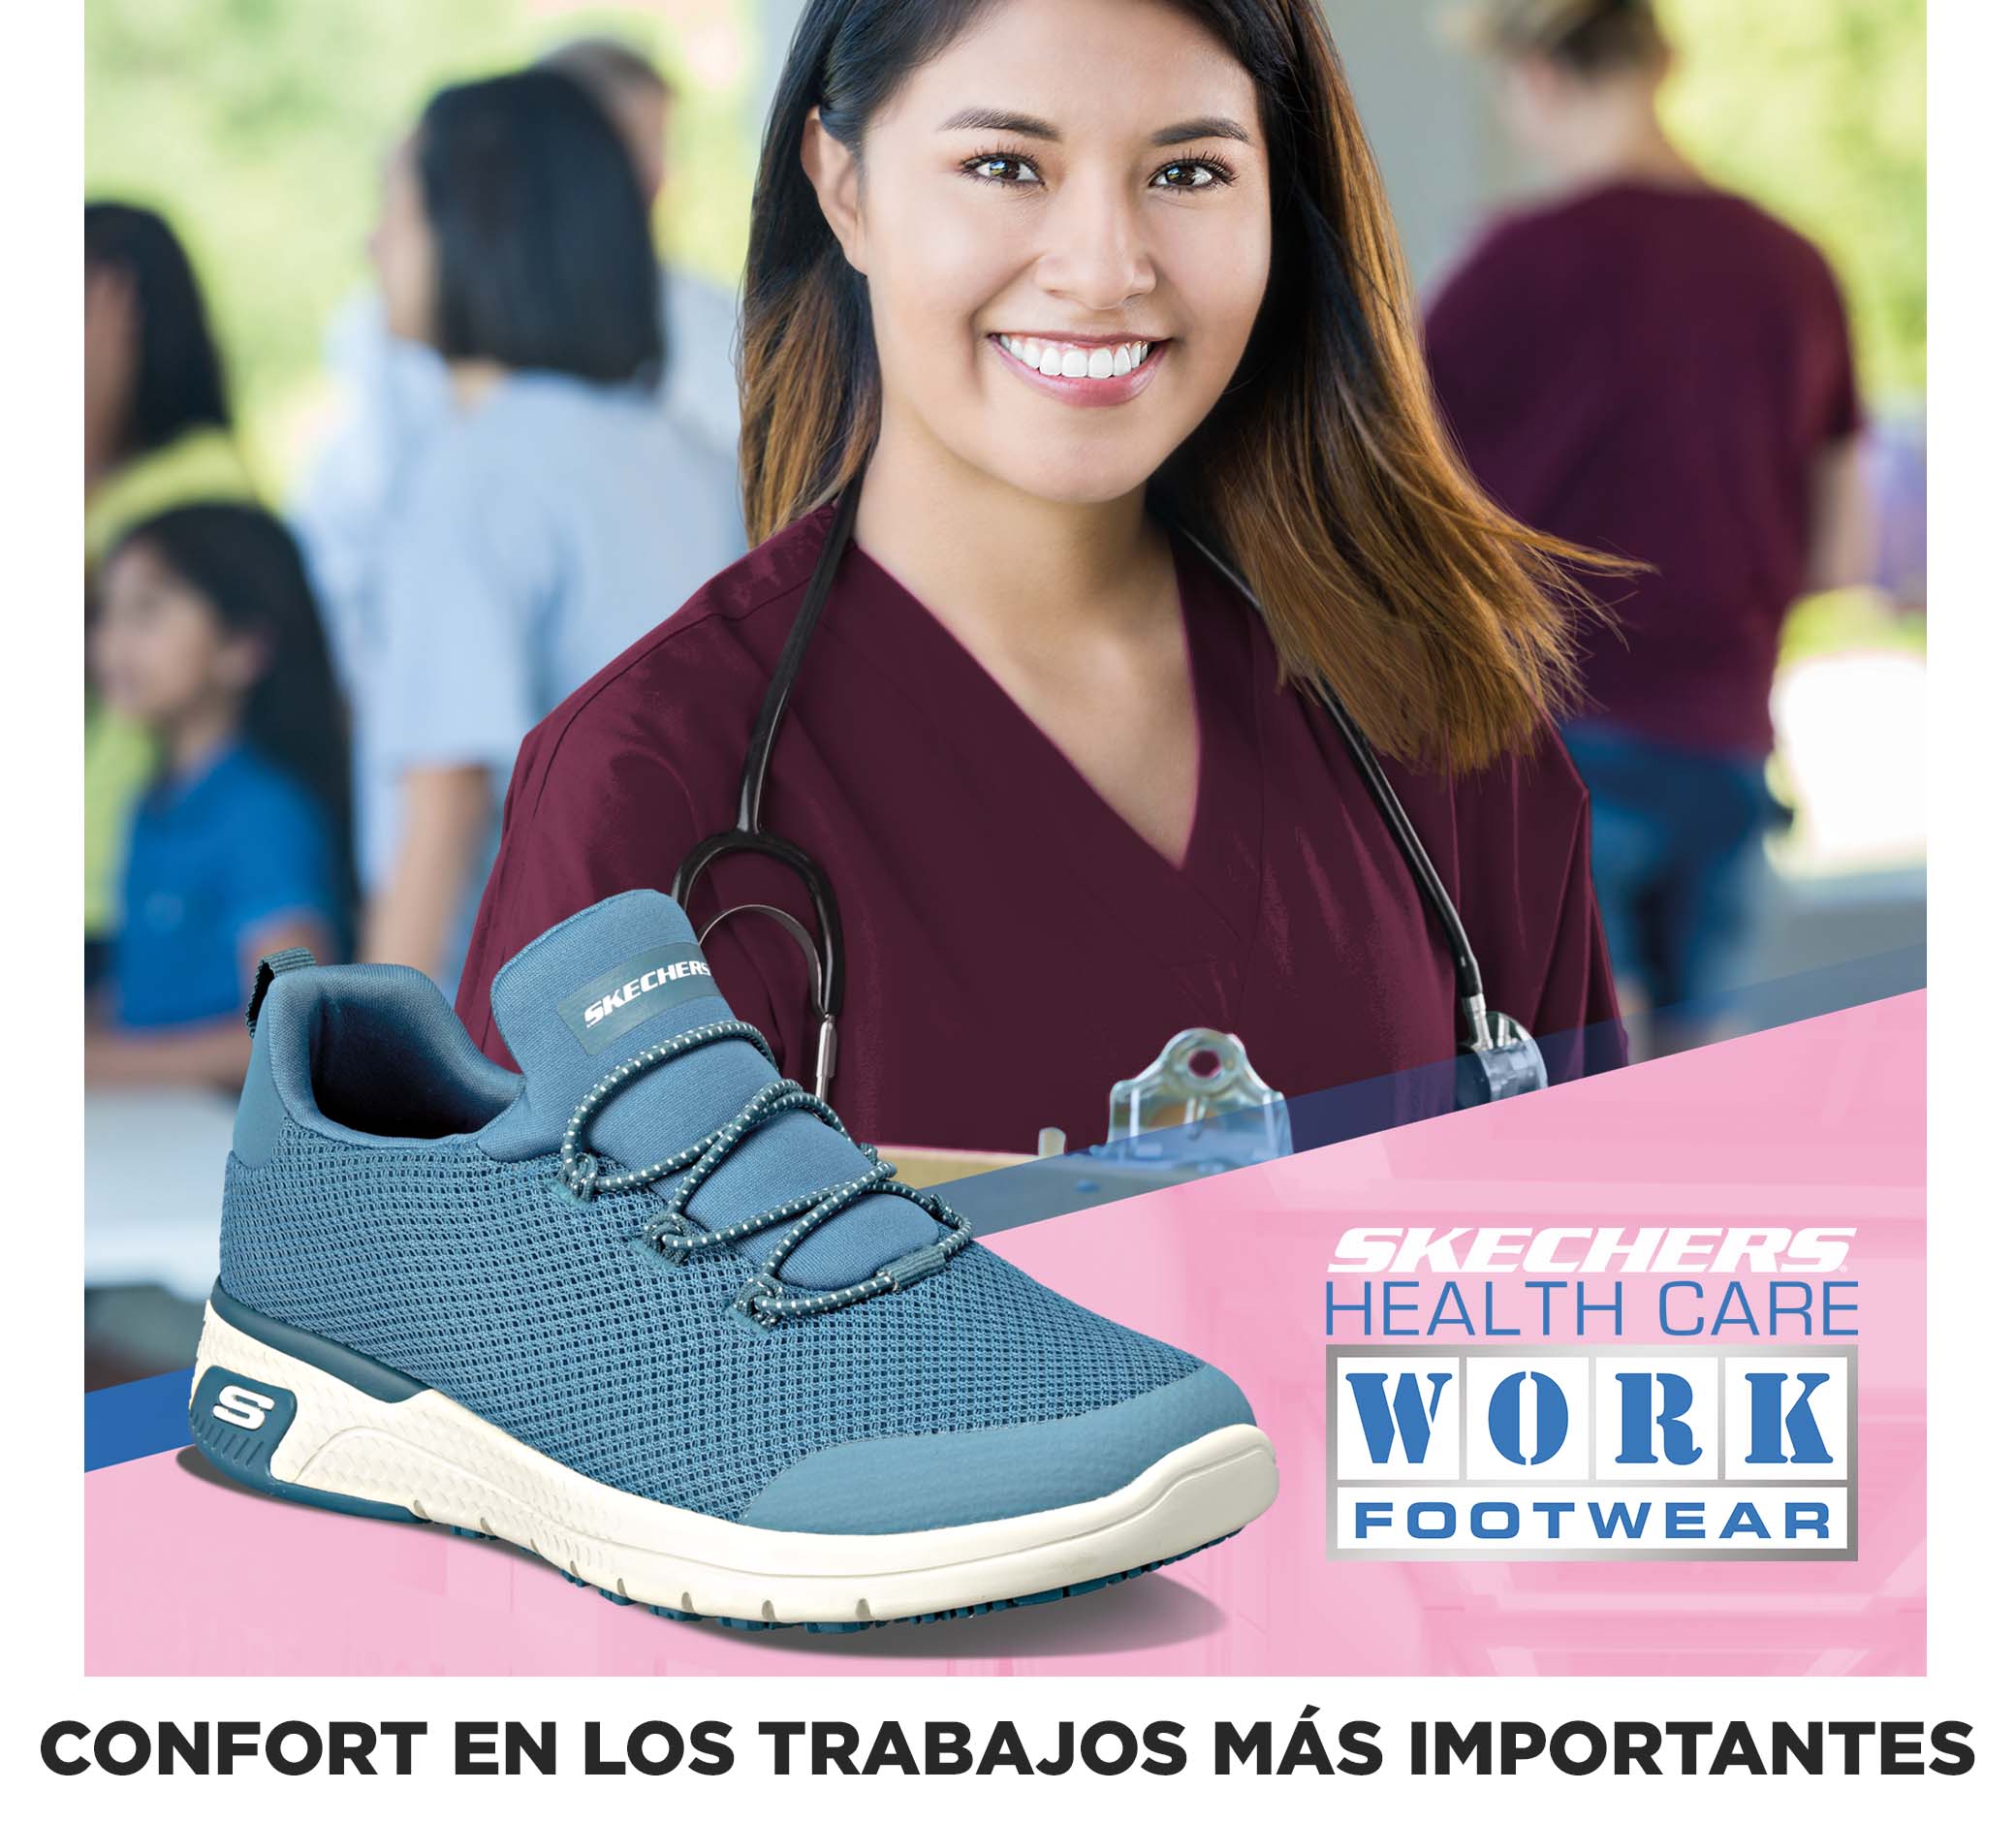 Soberano Vacío amanecer Zapatos Skechers En Valladolid 2019 Discount, 54% OFF |  www.colegiogamarra.com